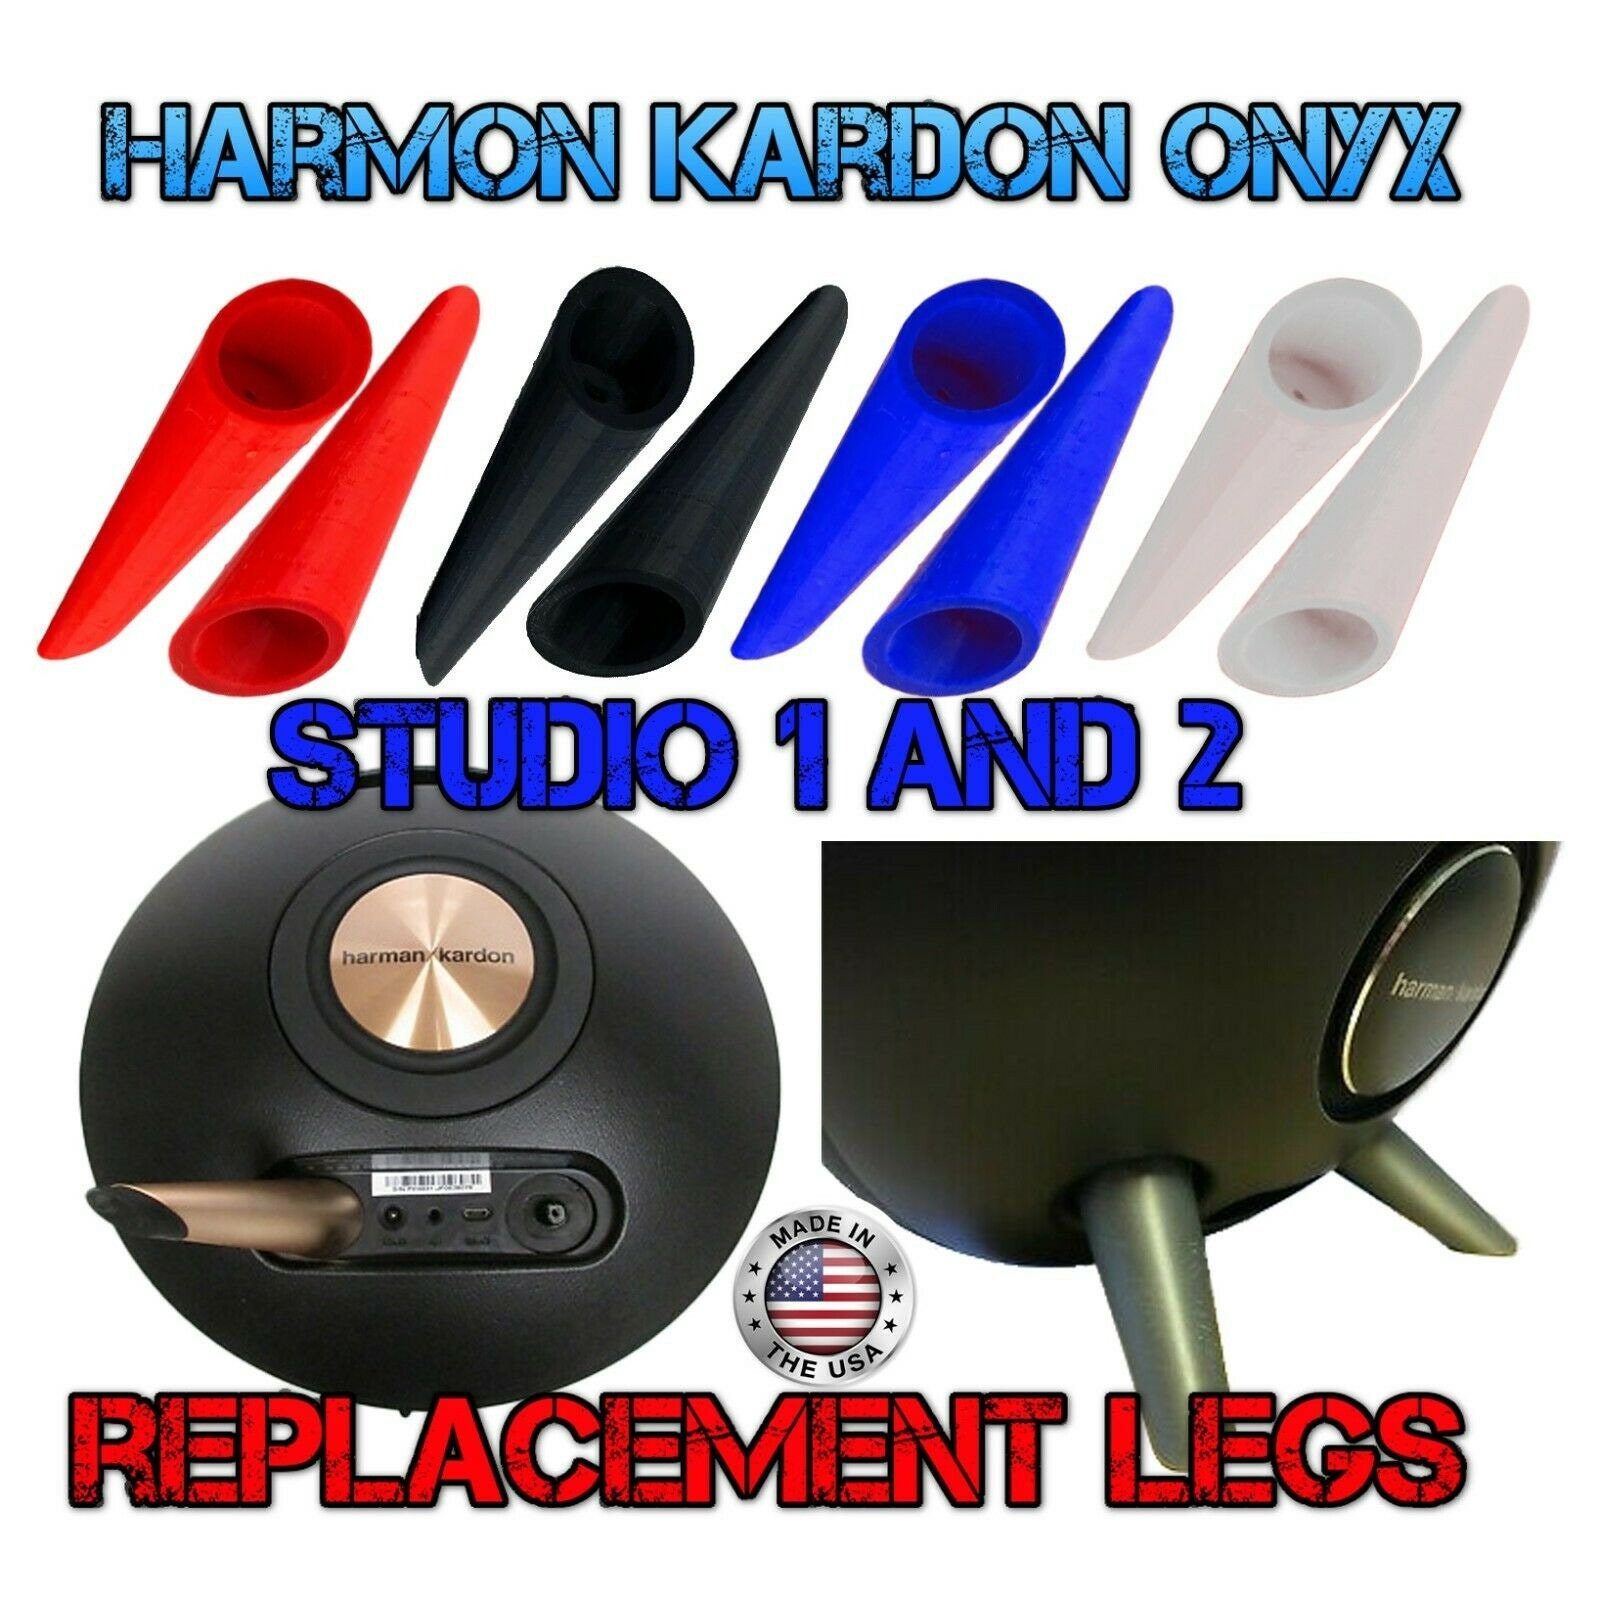 Harman Kardon Onyx Studio 1 & 2 pieds de remplacement avec vis - Etsy France